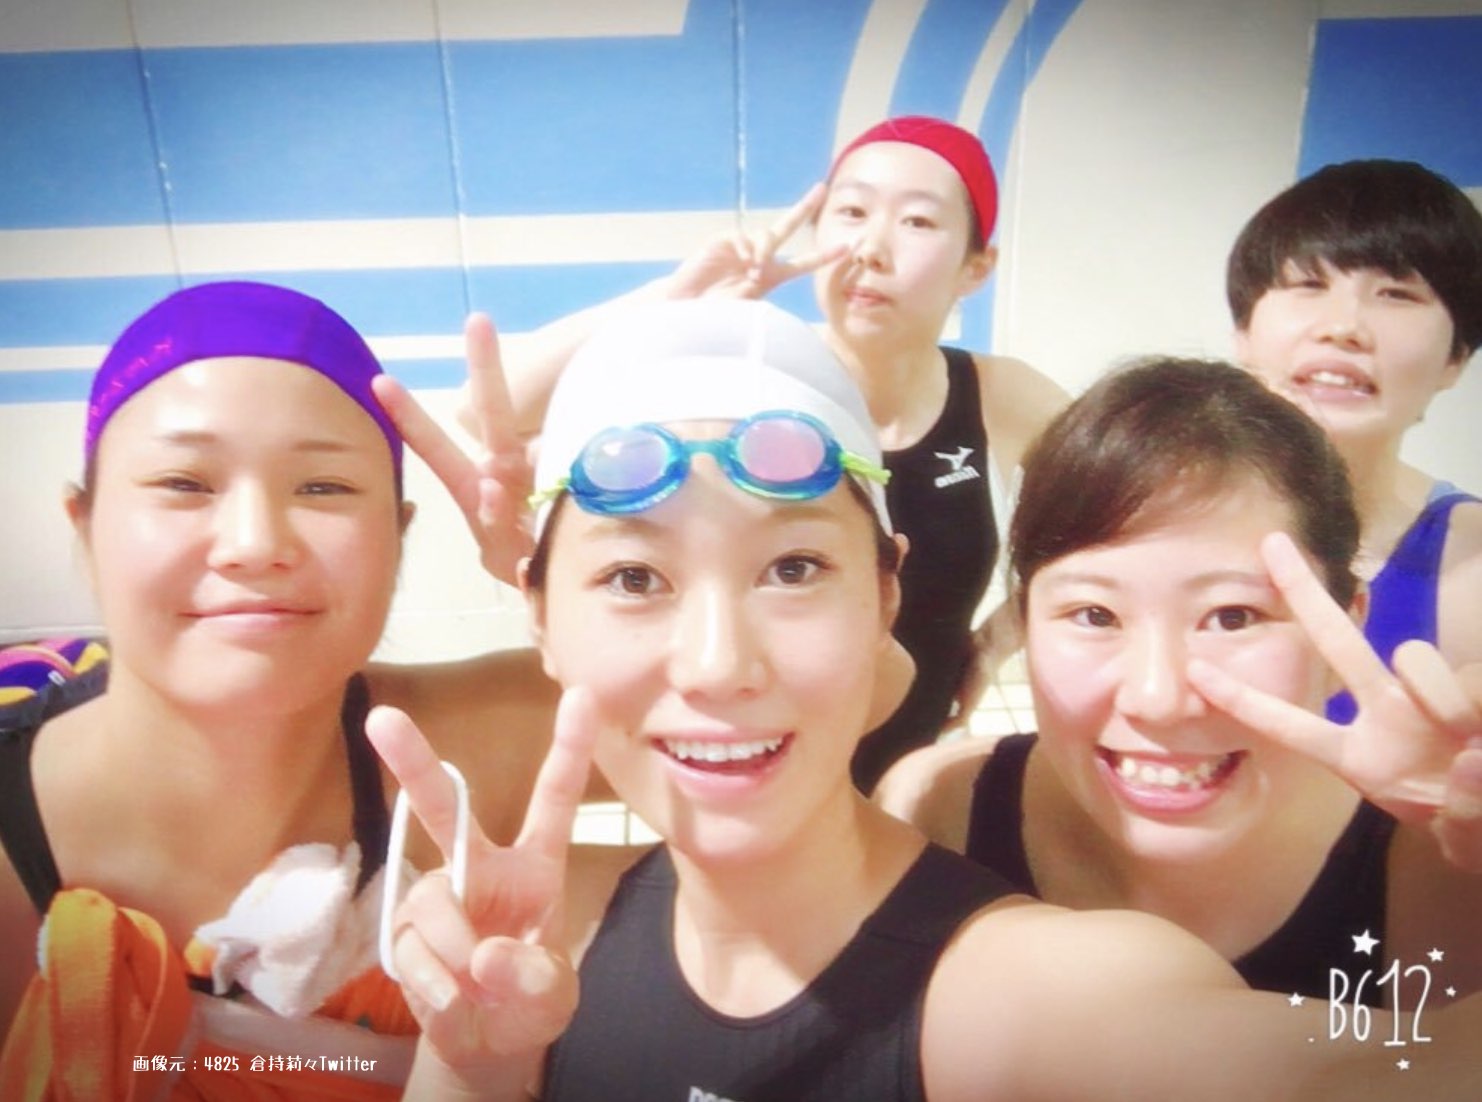 倉持莉々競艇選手(女子ボートレーサー)は水球では日本トップレベルだった